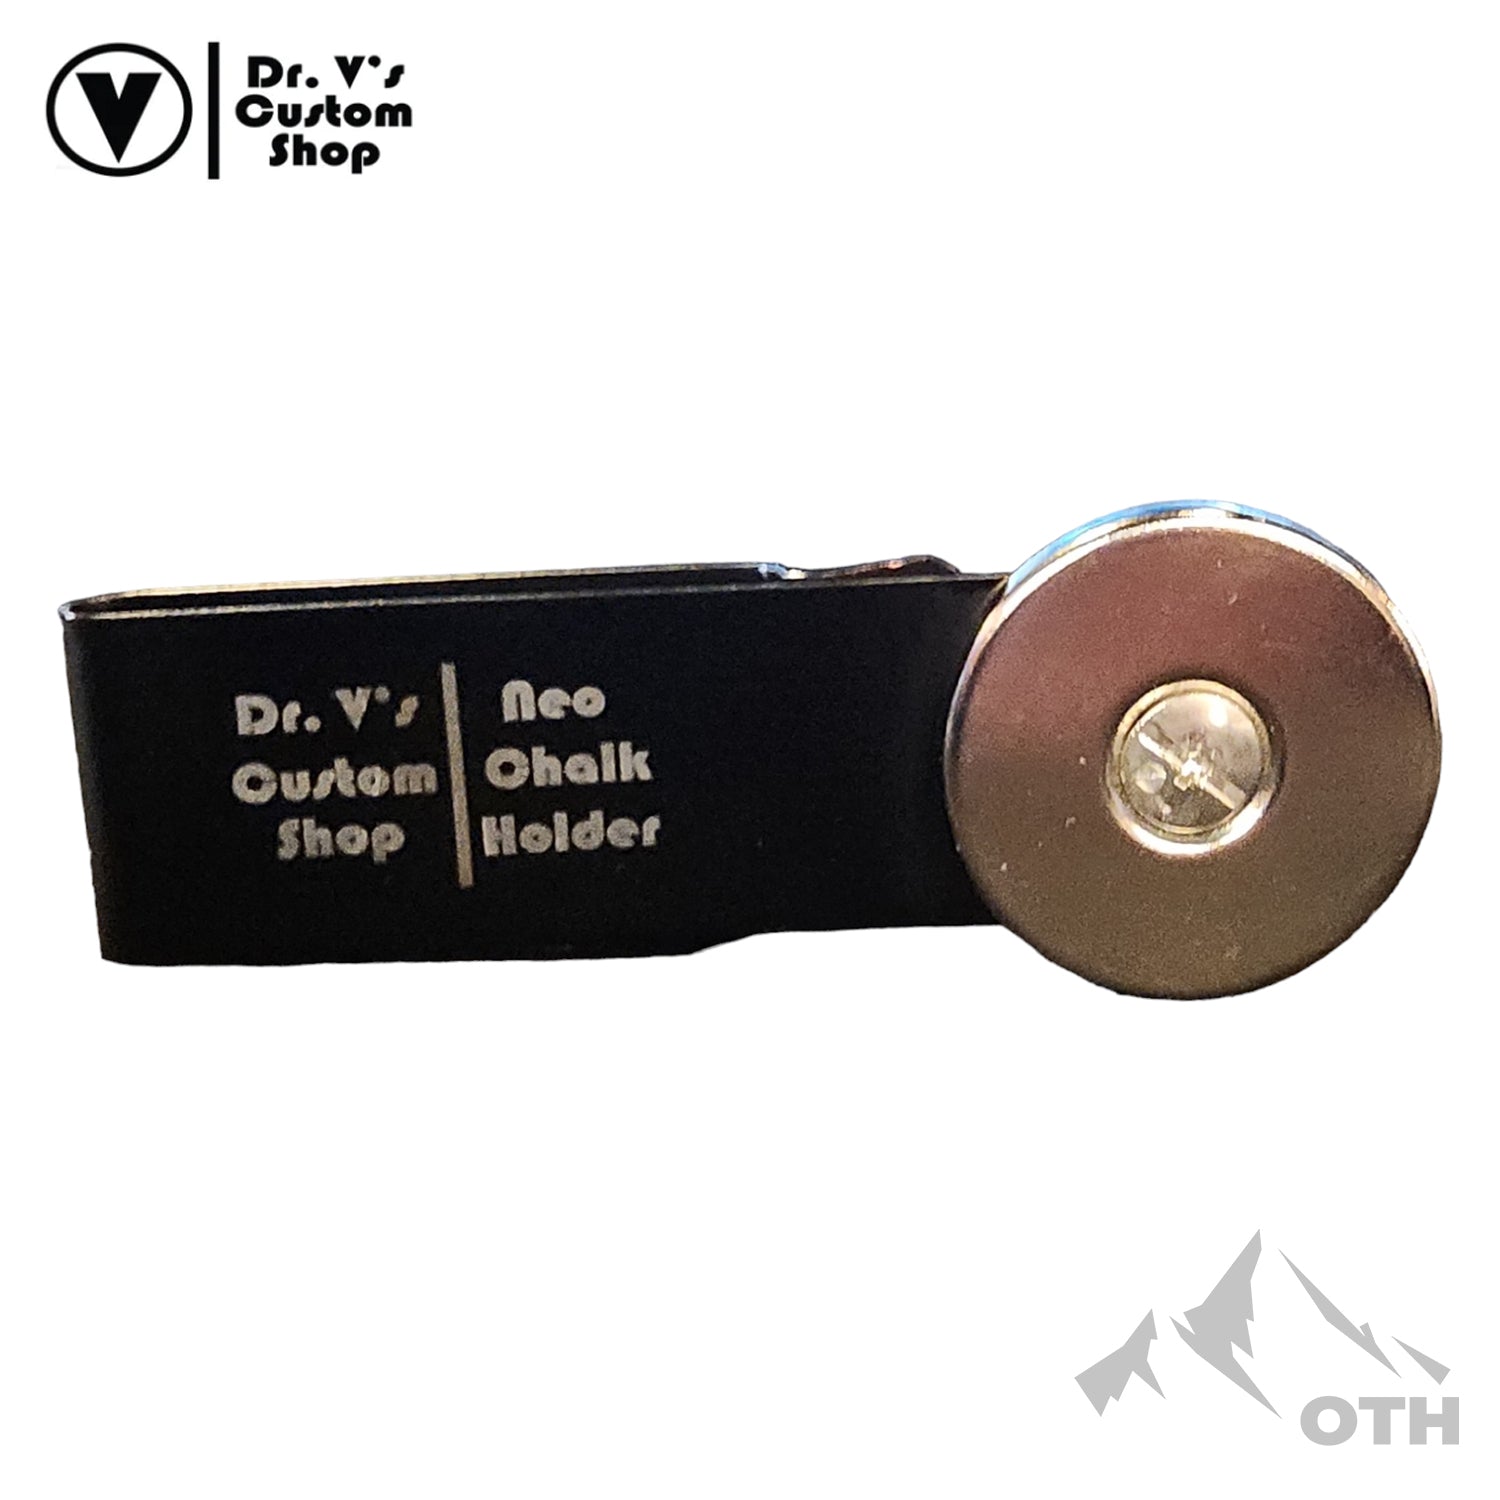 Dr. V's Metal Belt Clip Holder